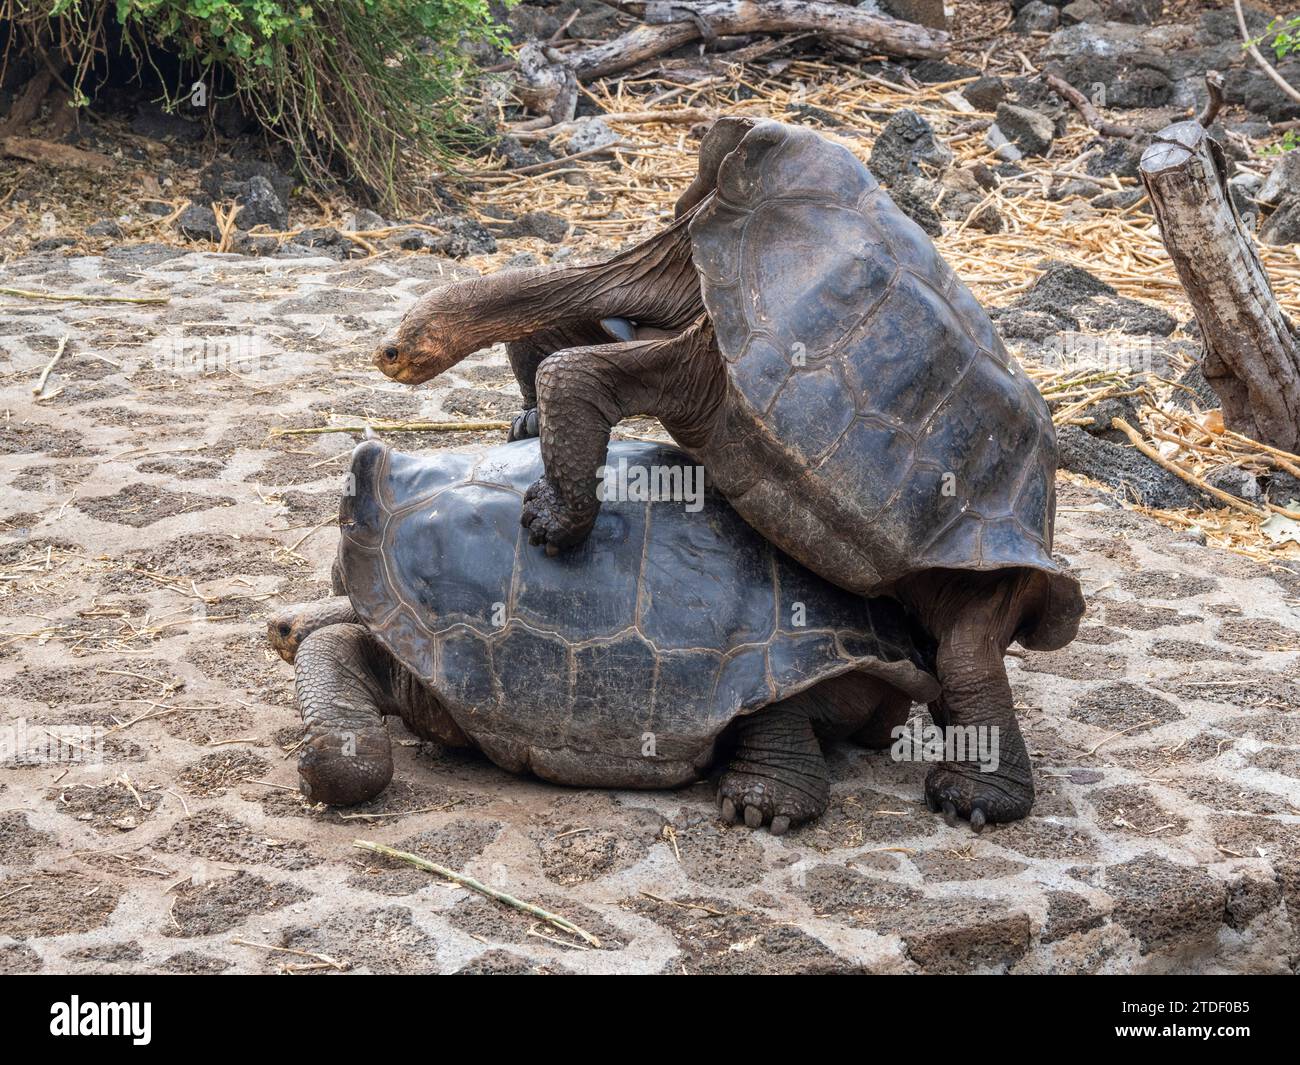 Tortues géantes captives des Galapagos (Chelonoidis spp), station de recherche Charles Darwin, île Santa Cruz, îles Galapagos, site du patrimoine mondial de l'UNESCO Banque D'Images